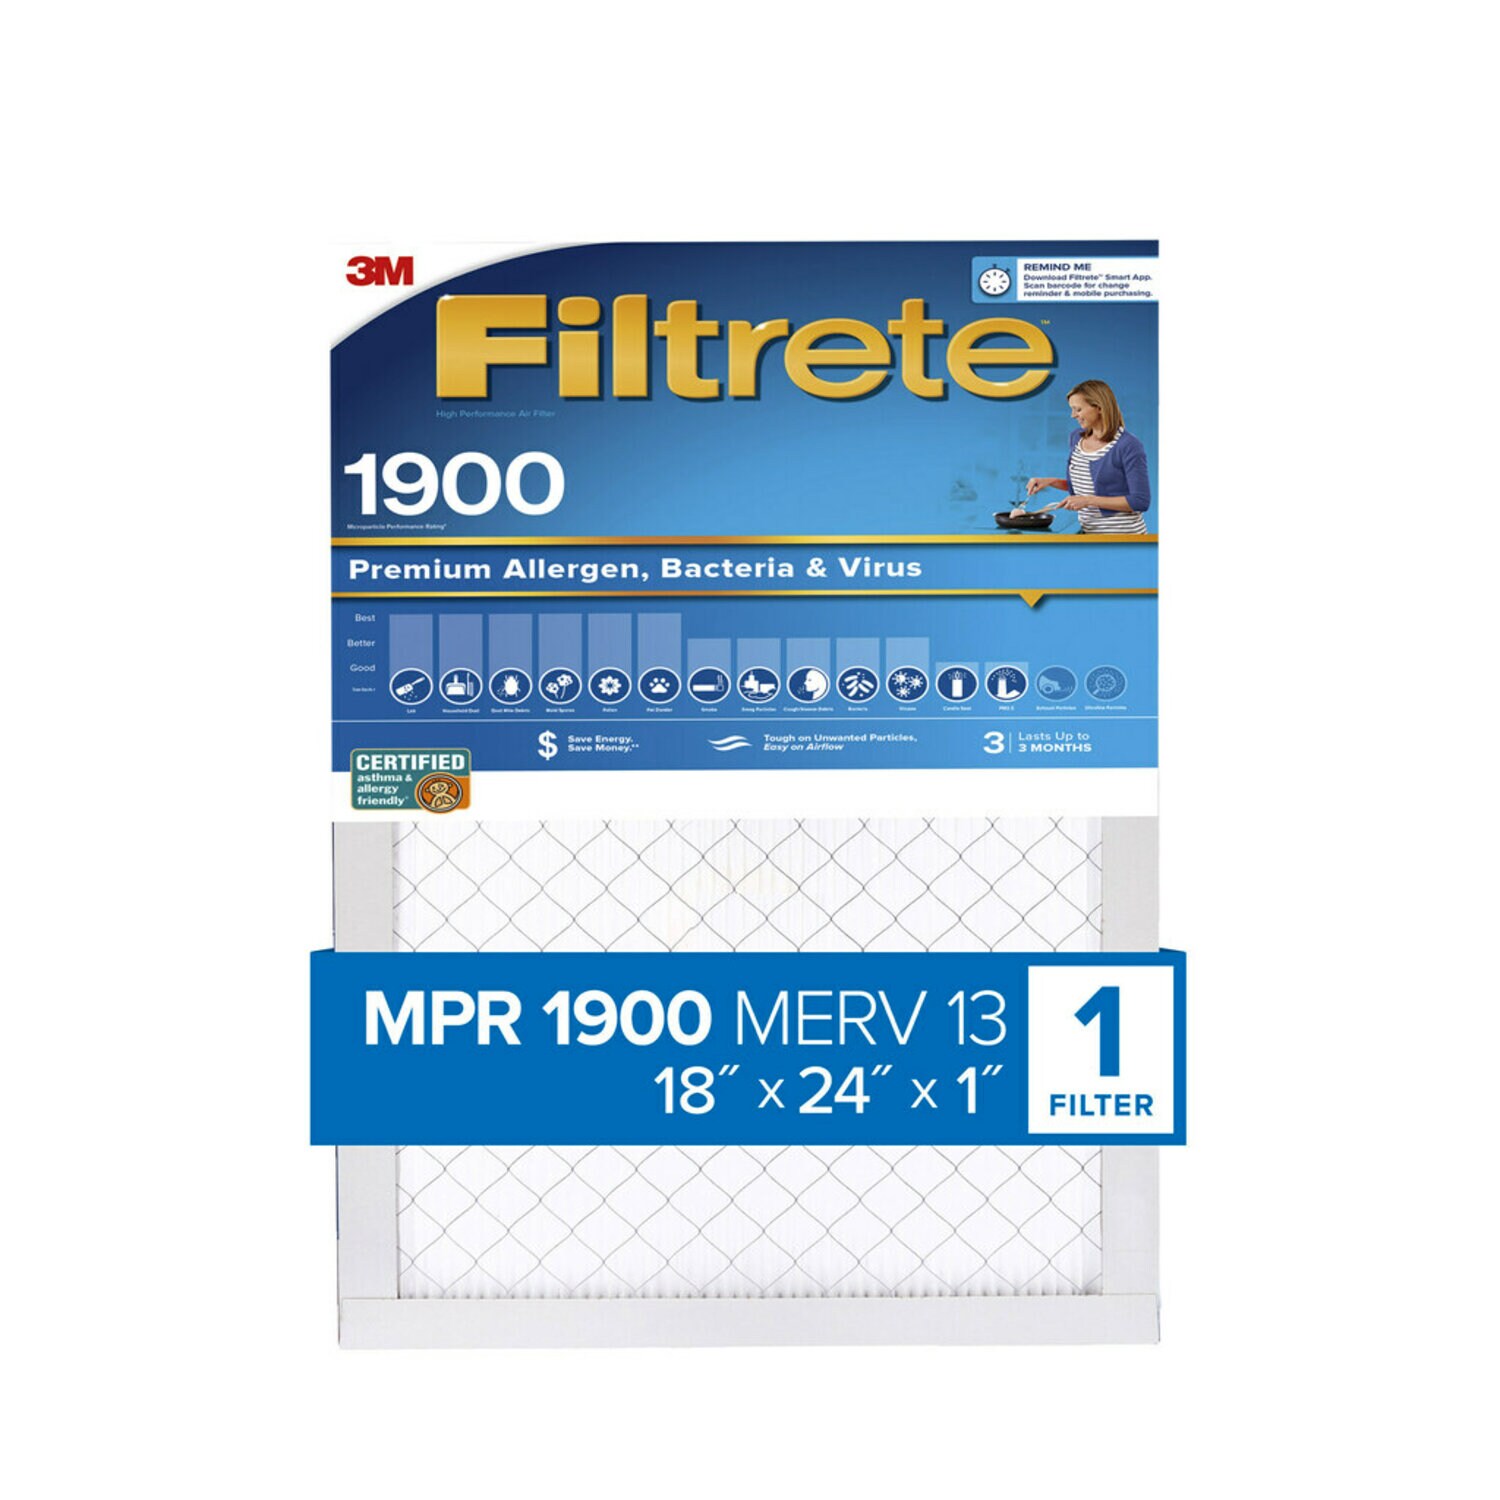 7100189216 - Filtrete Premium Allergen, Bacteria & Virus Air Filter, 1900 MPR,
UA21-4, 18 in x 24 in x 1 in (45,7 cm x 60,9 cm x 2,5 cm)